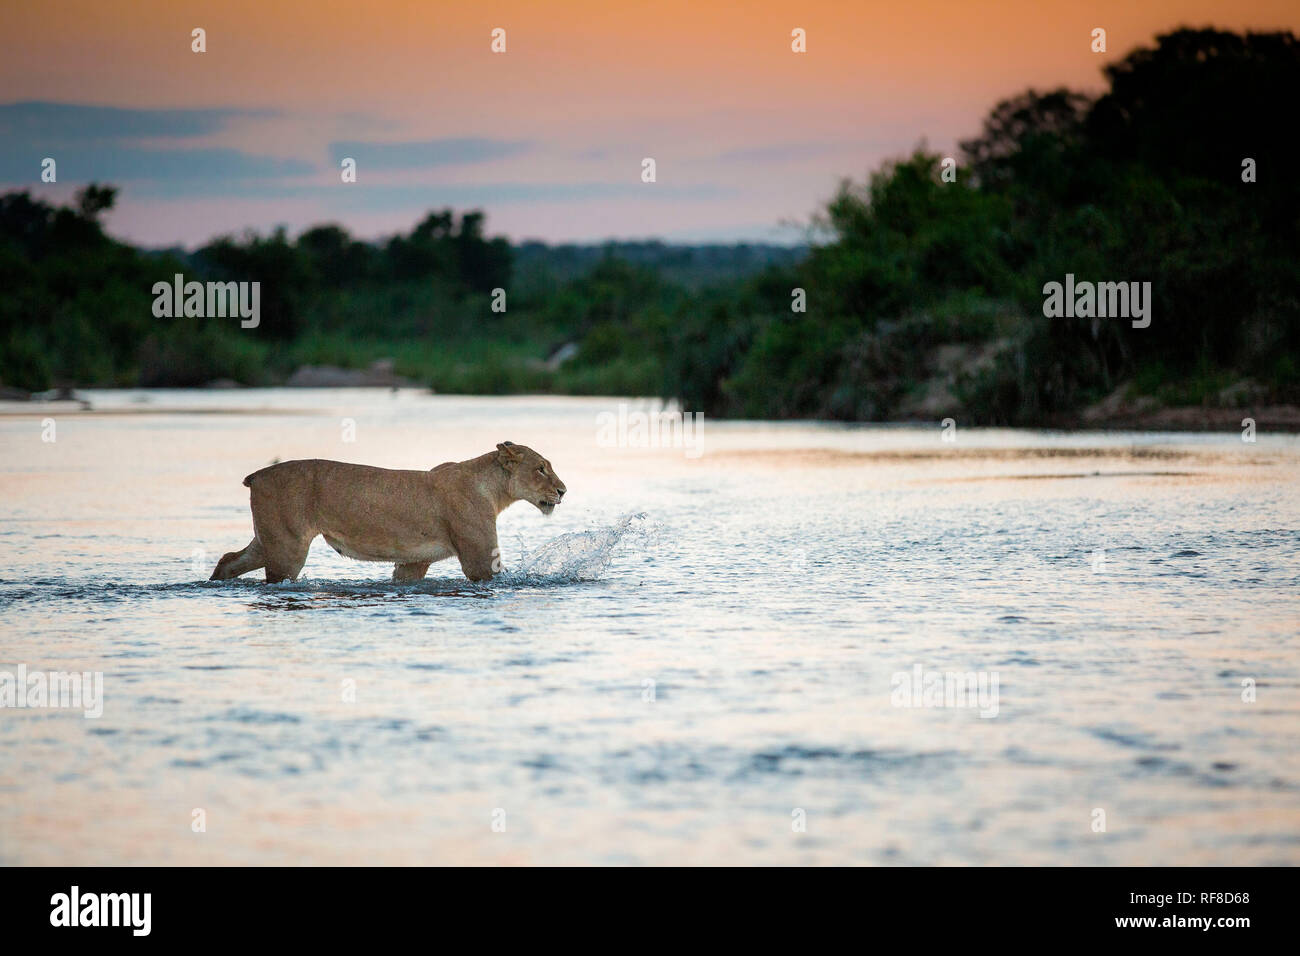 Ein junger Löwe Panthera leo, ohne Schwanz Spaziergänge über einen Fluss, die Ohren zurück, Weg suchen, Spritzwasser, Sonnenuntergang im Hintergrund. Stockfoto